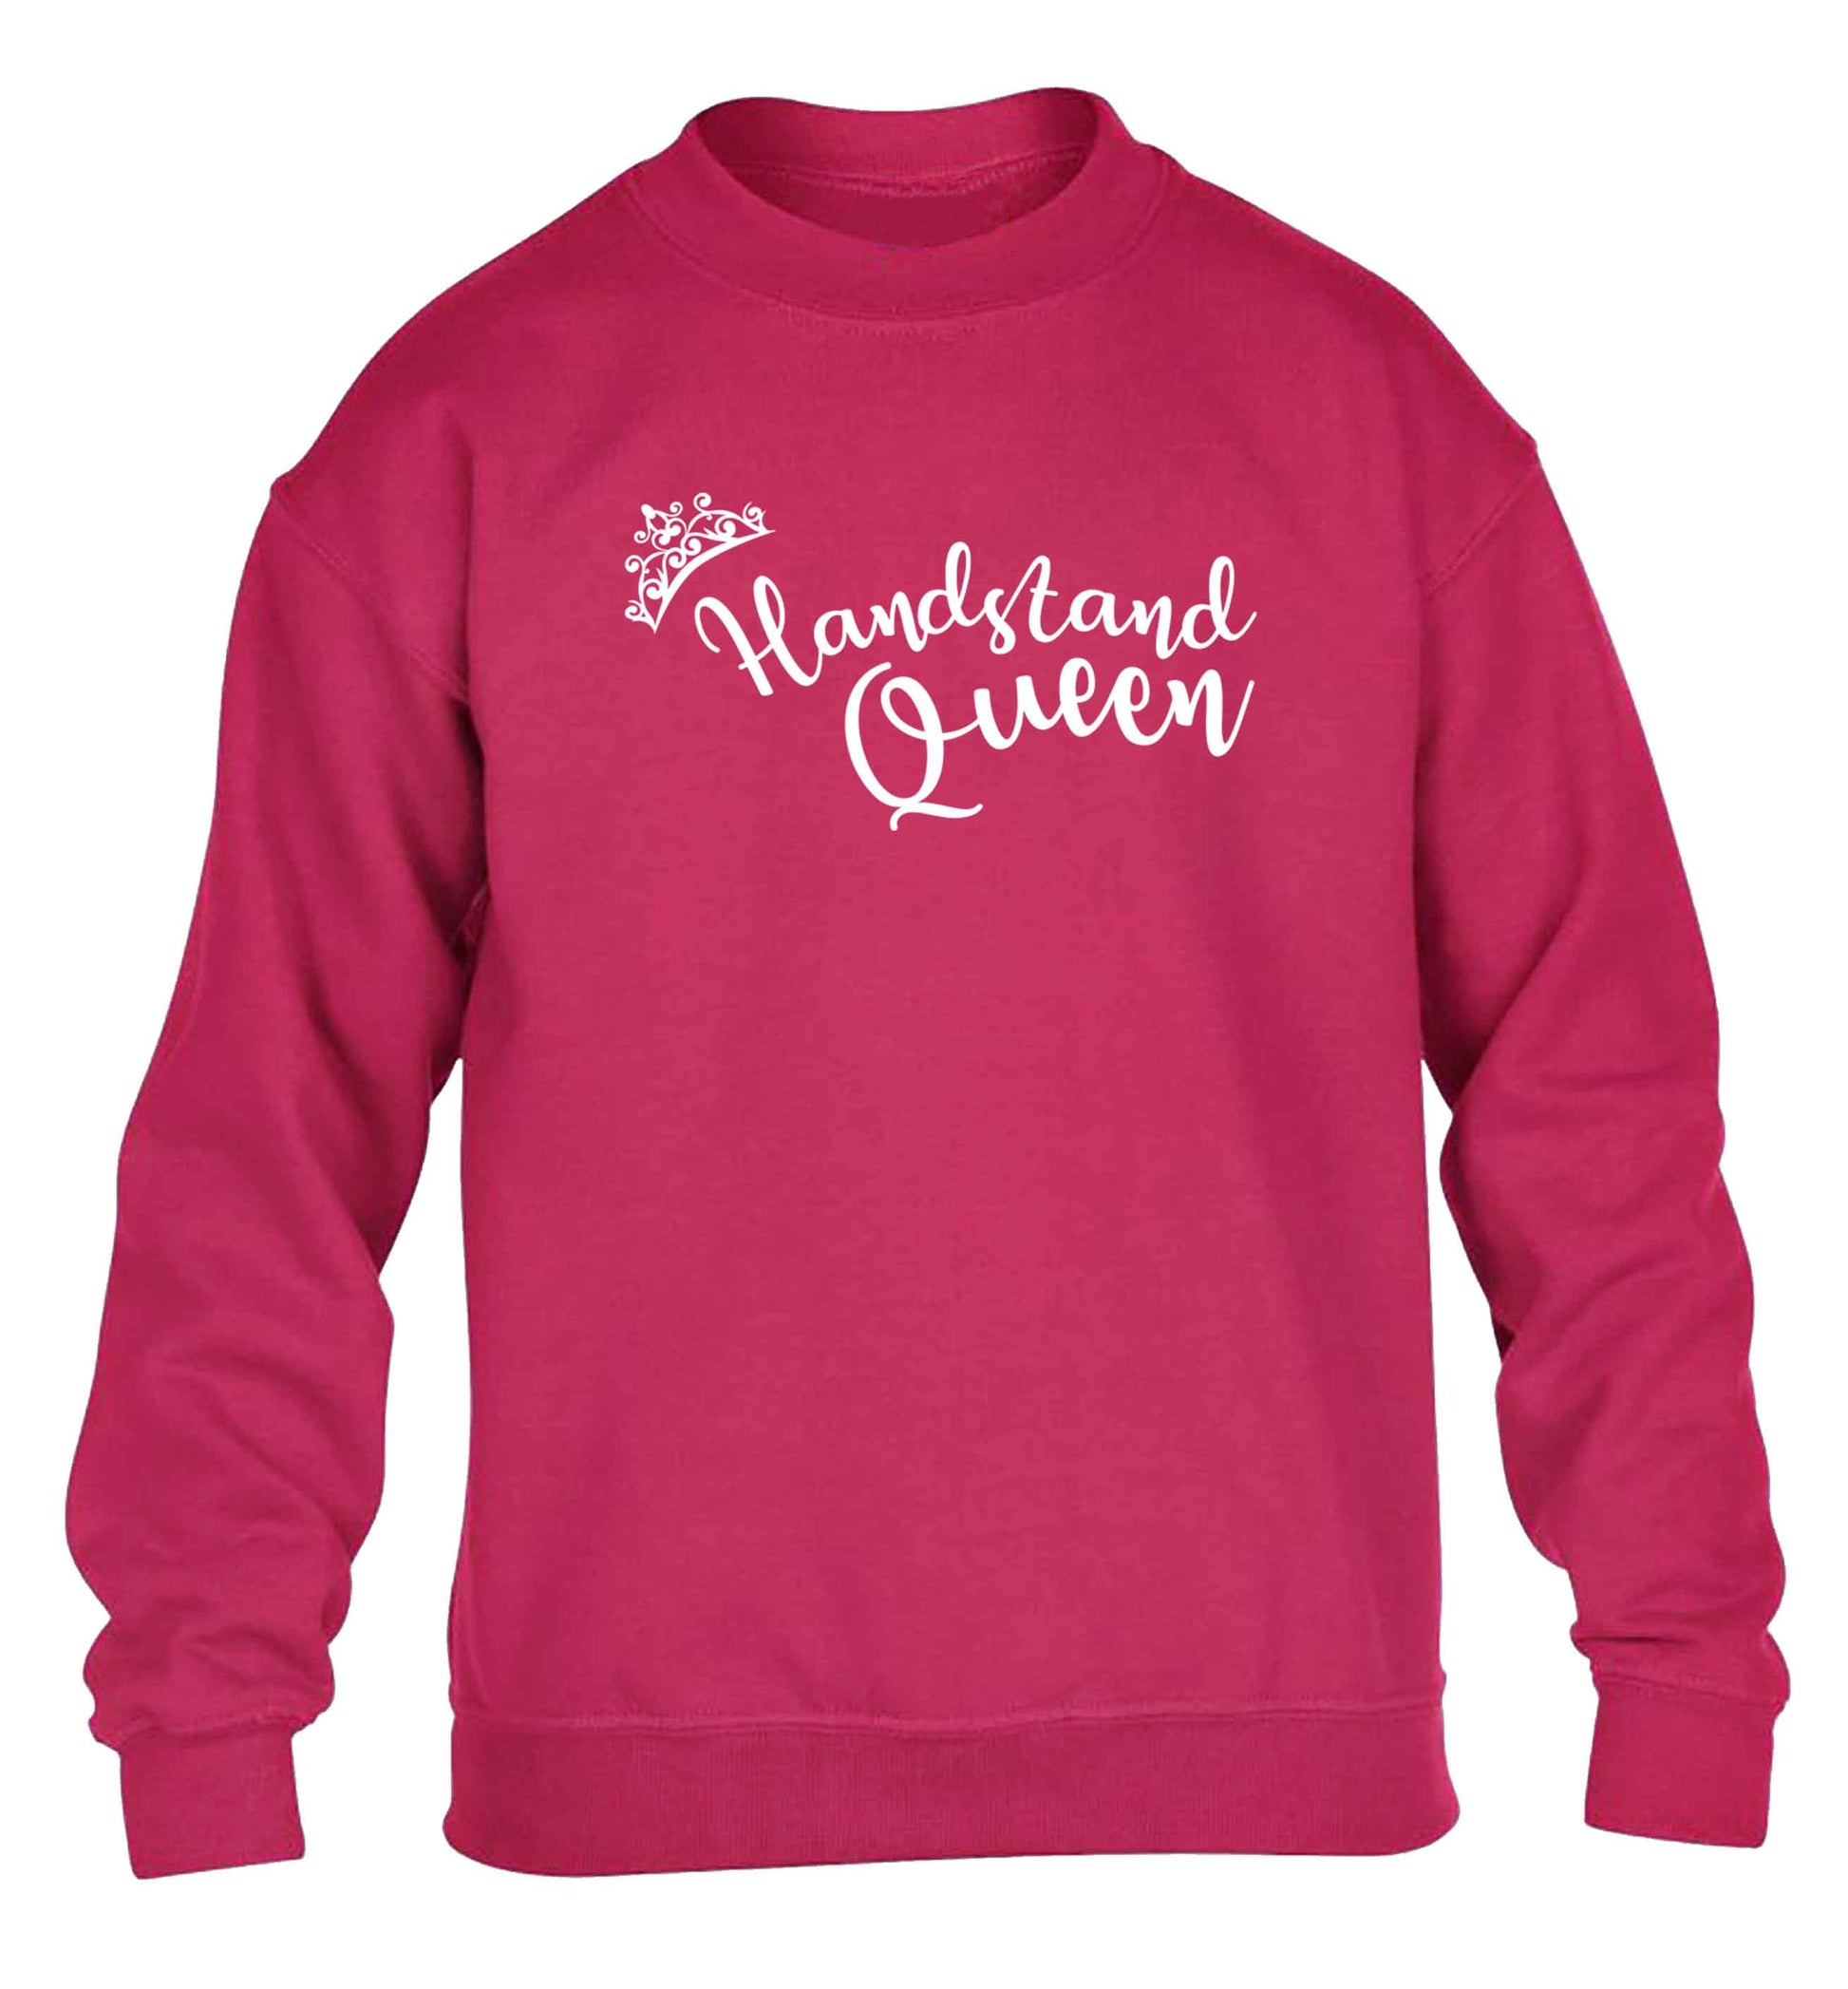 Handstand Queen children's pink sweater 12-13 Years